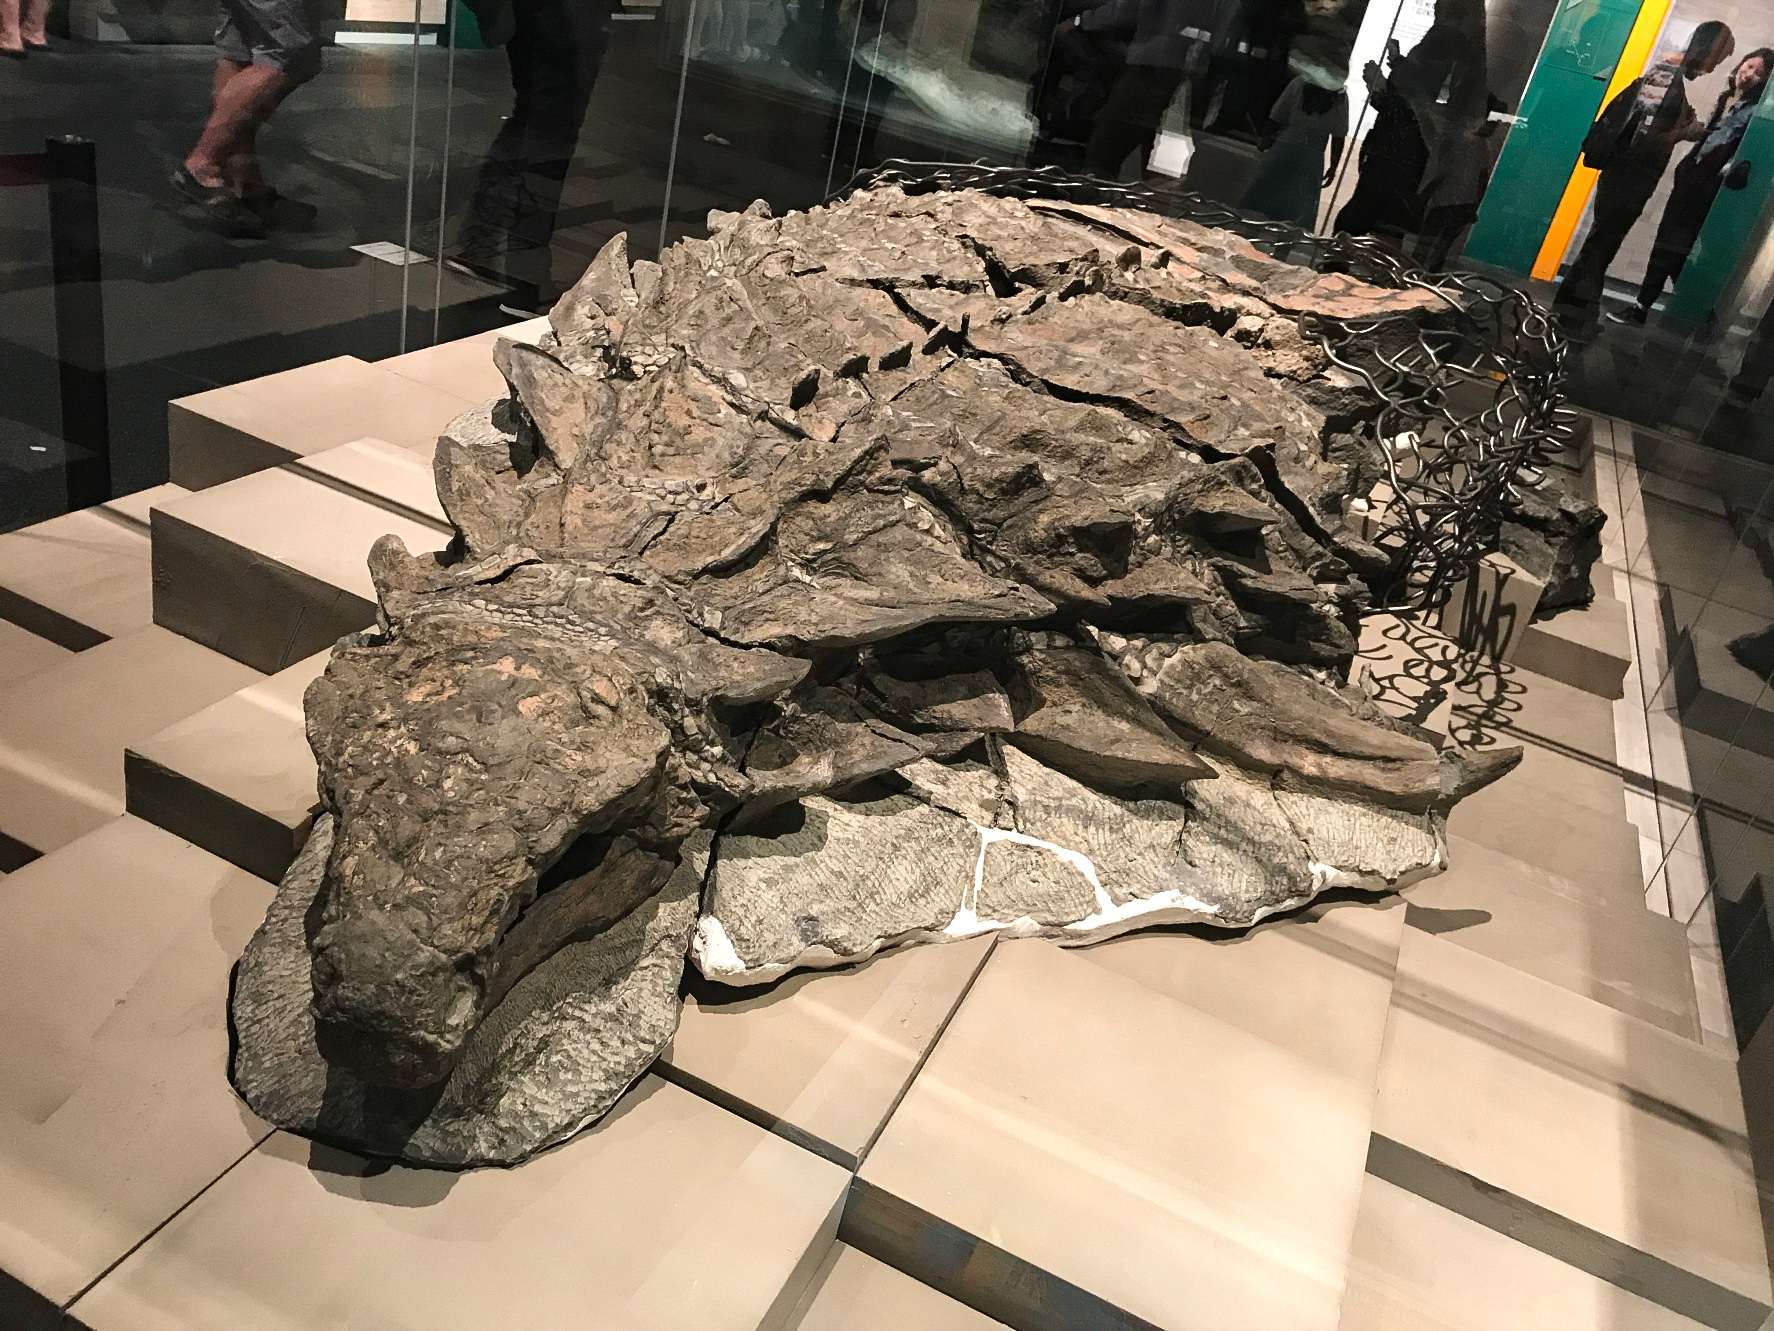 Borealopelta (som betyder "Northern shield") är ett släkte av nodosauridankylosaur från tidig krita i Alberta, Kanada. Den innehåller en enda art, B. markmitchelli, namngiven 2017 av Caleb Brown och kollegor från ett välbevarat exemplar som kallas Suncor nodosaur.